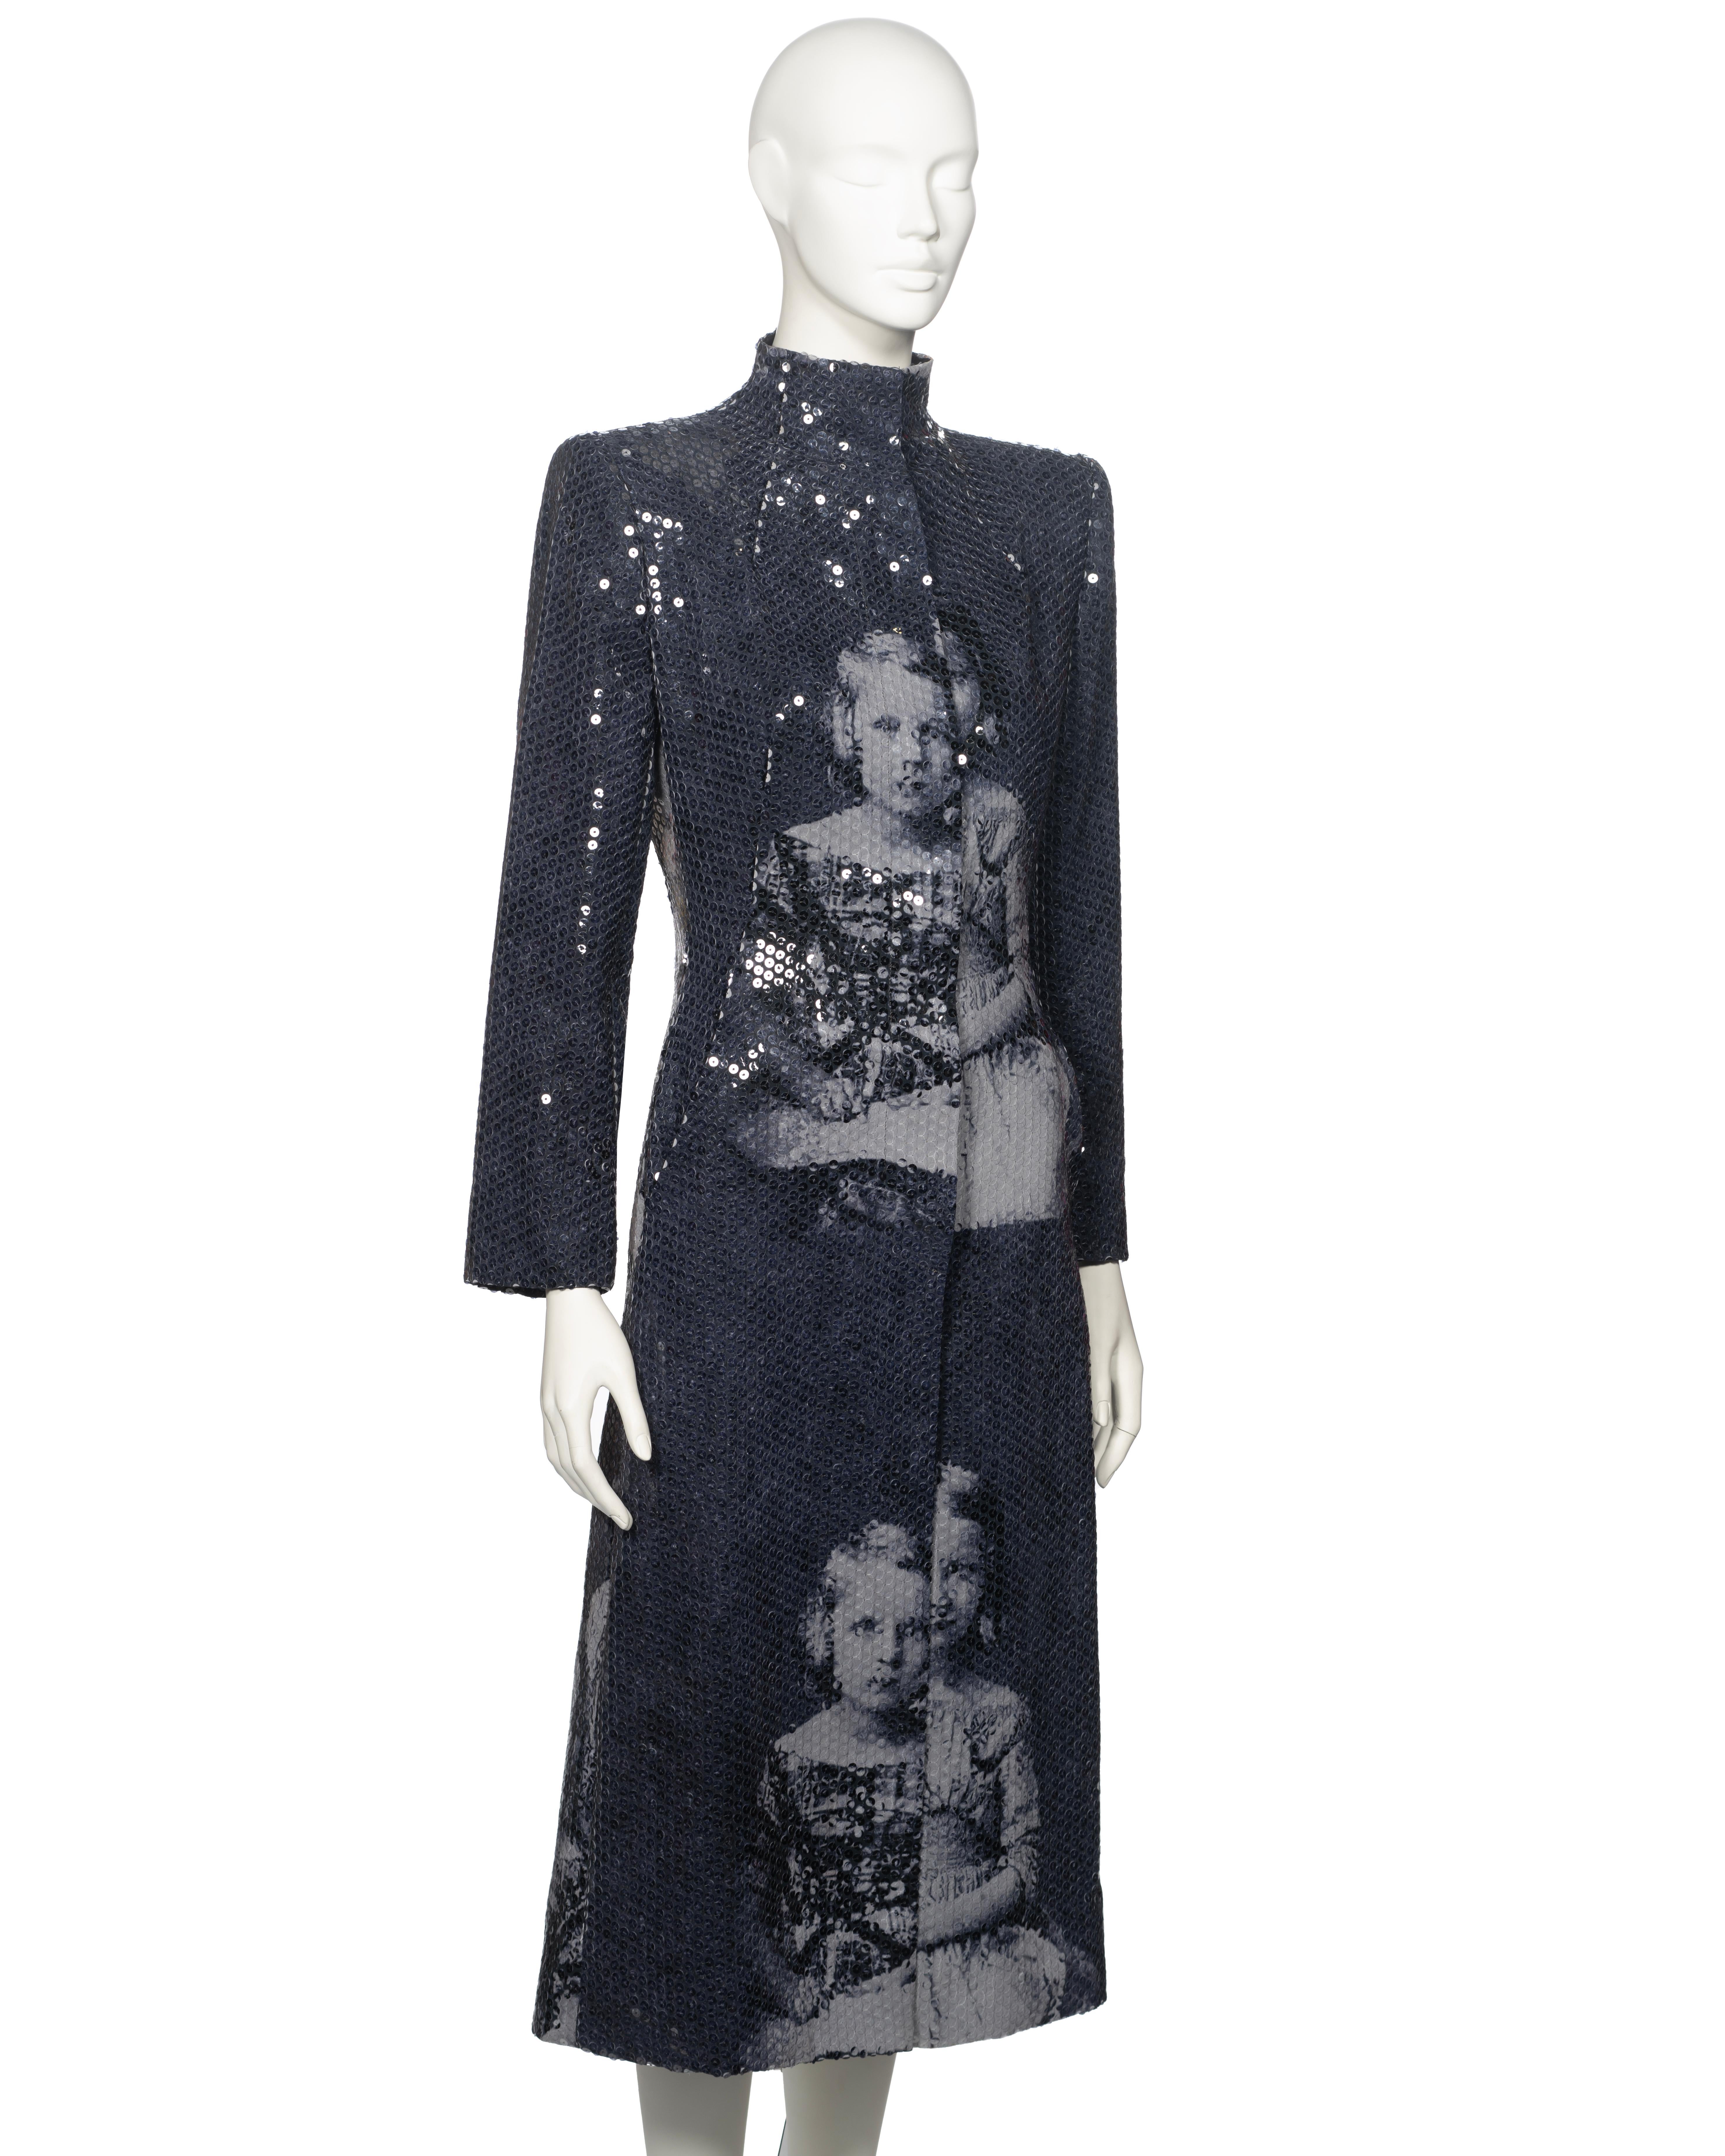 Alexander McQueen Sequin 'Joan' Evening Coat, fw 1998 For Sale 9